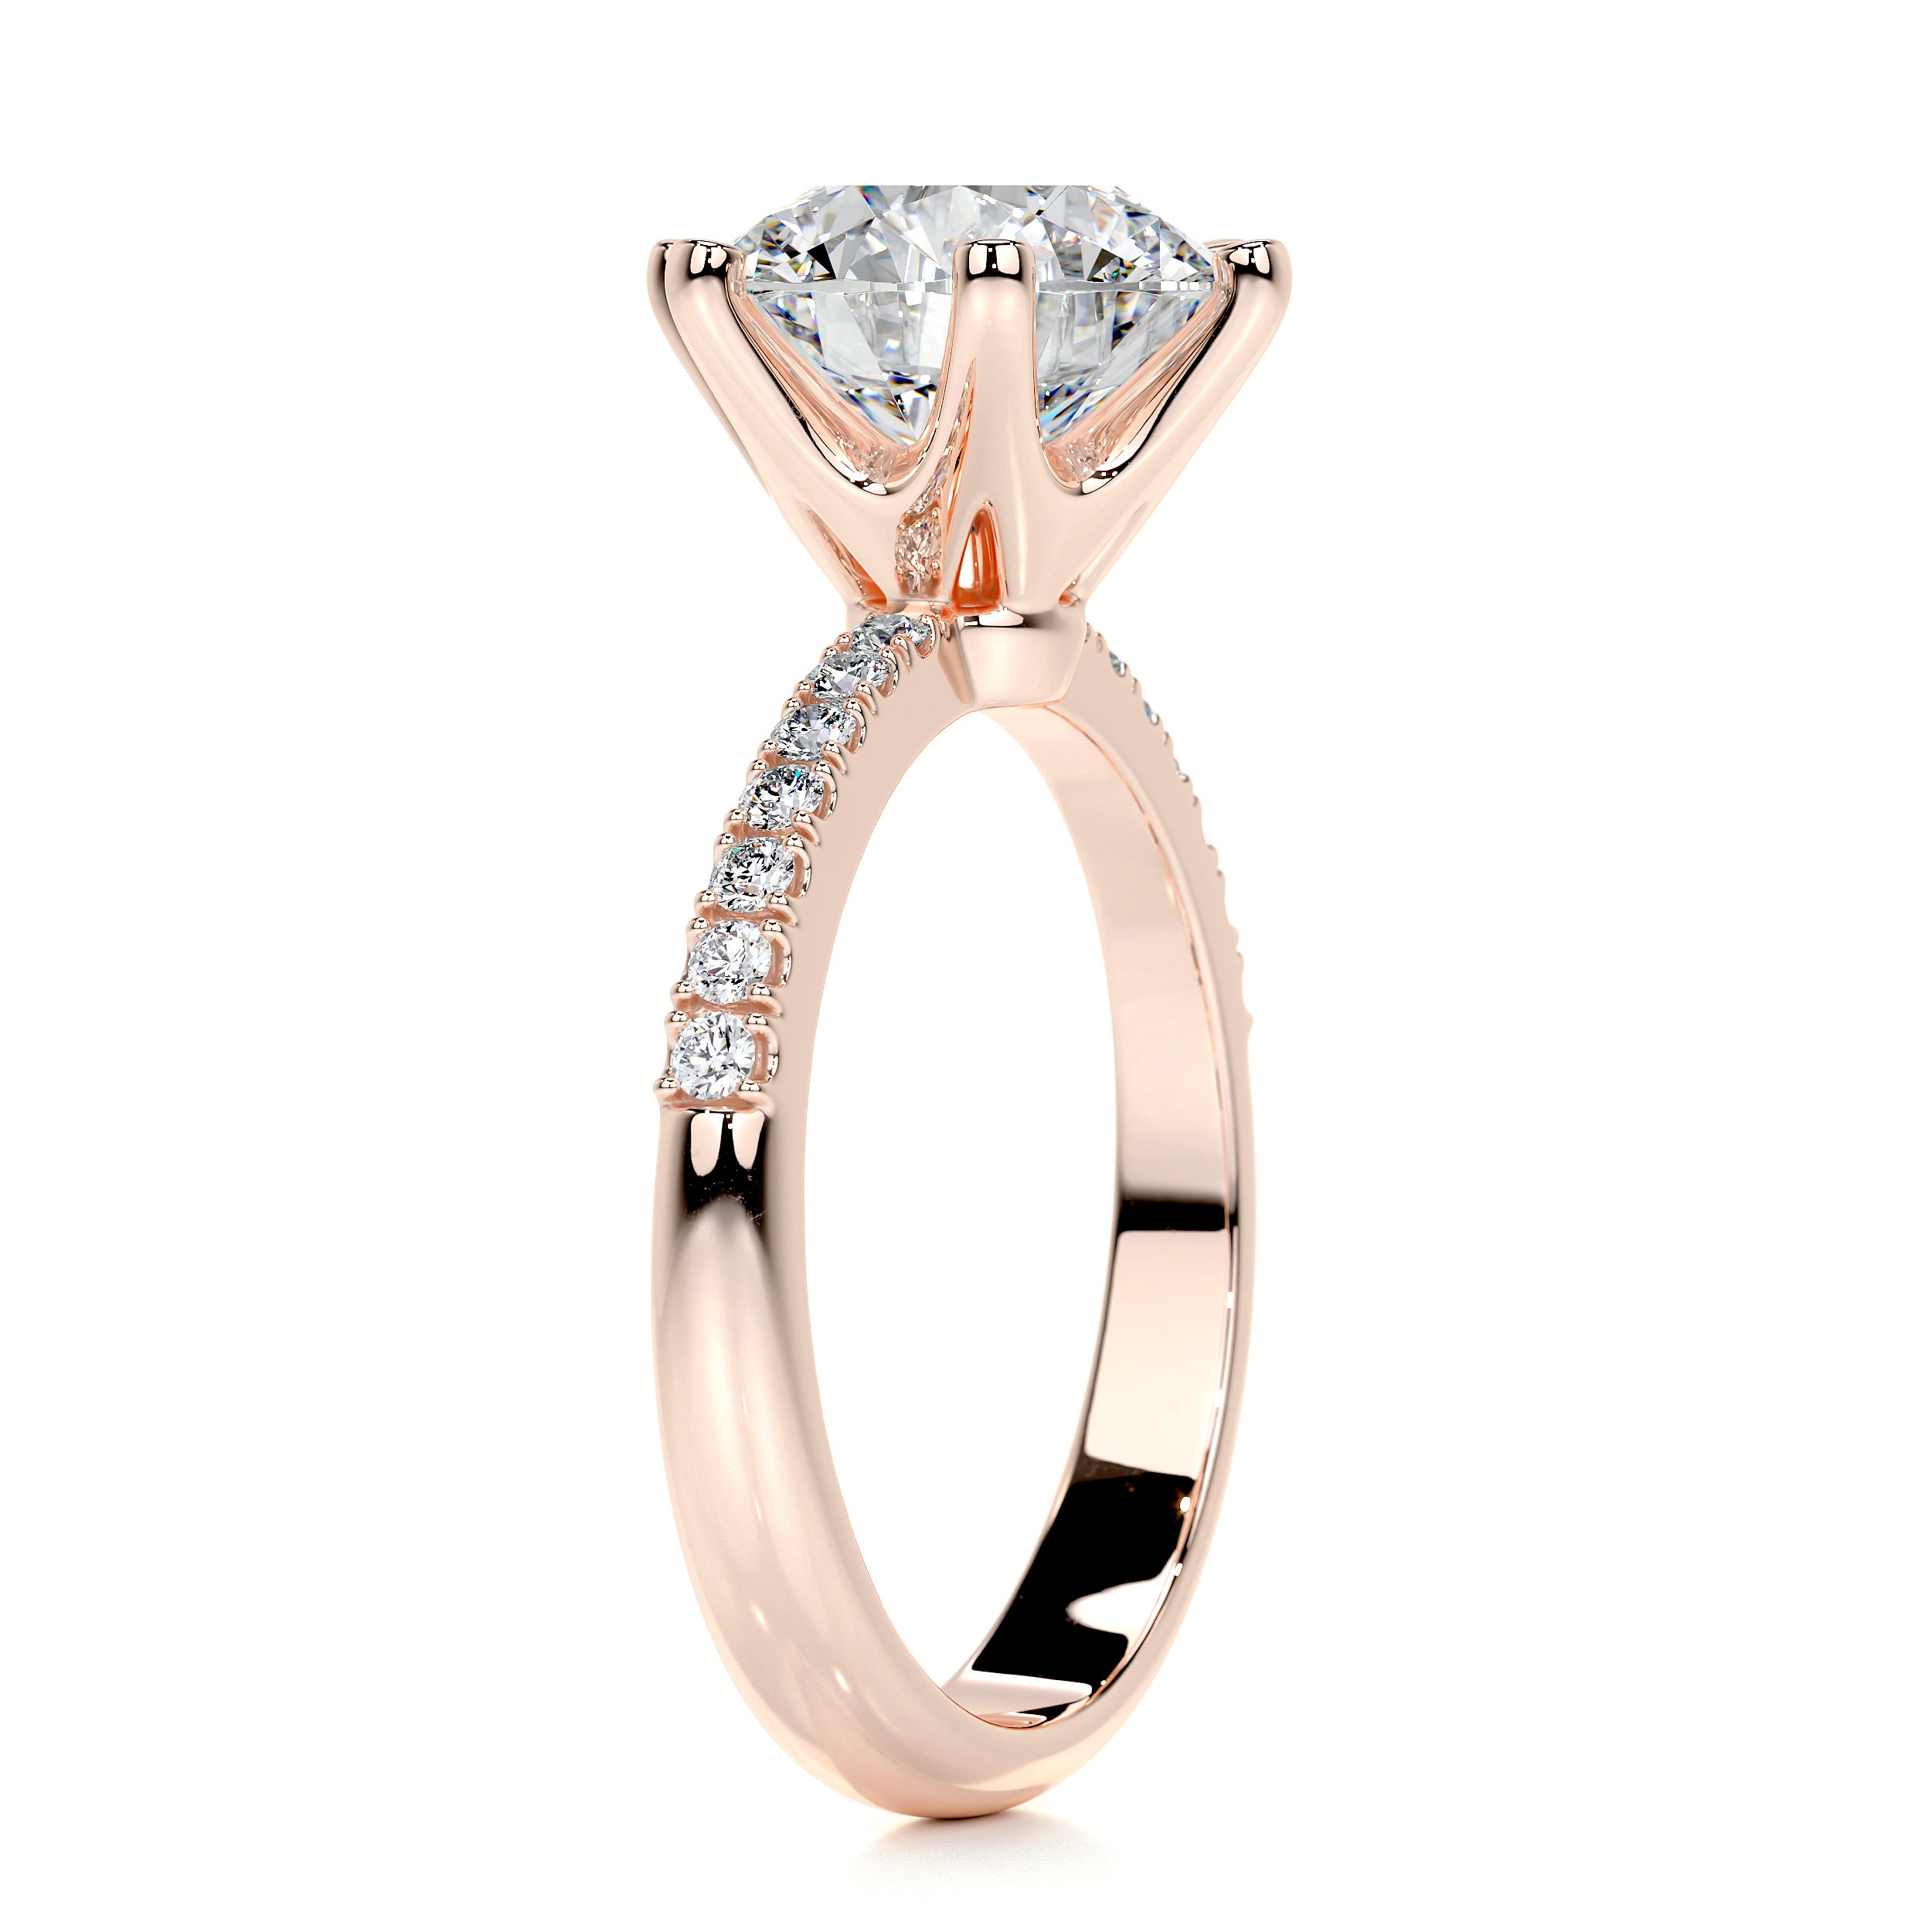 Samantha Diamond Engagement Ring   (3.15 Carat) -14K Rose Gold